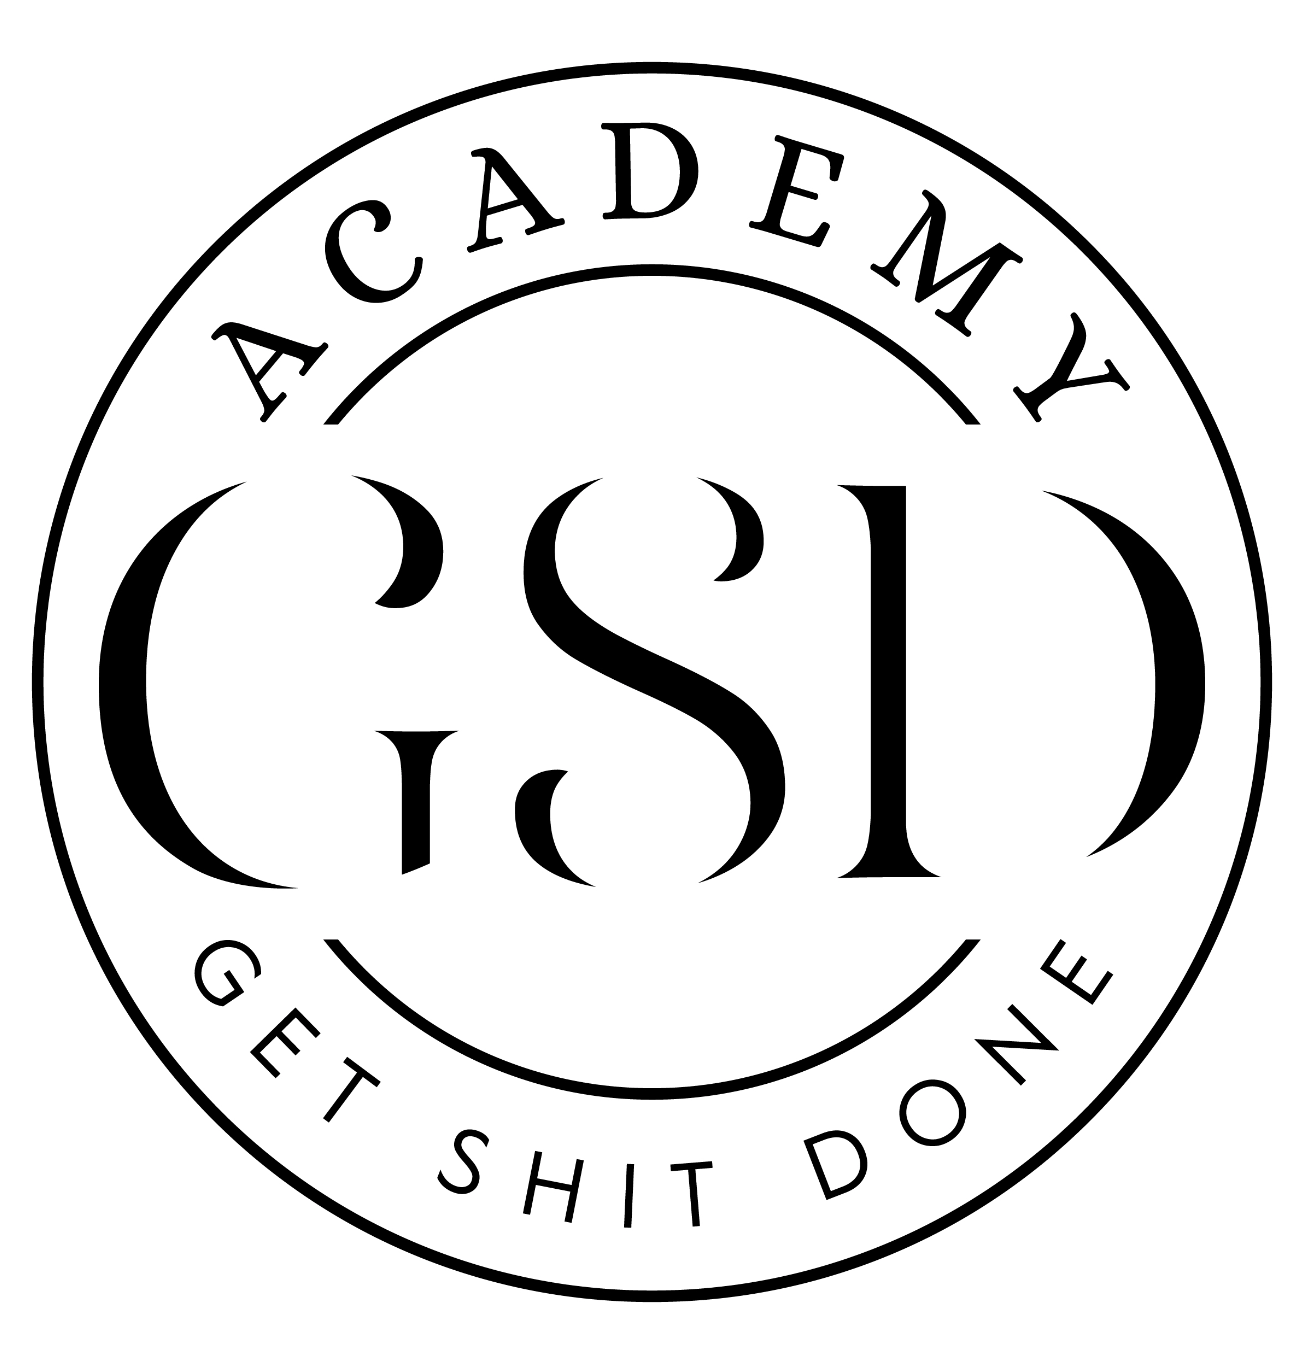 The GSD Academy